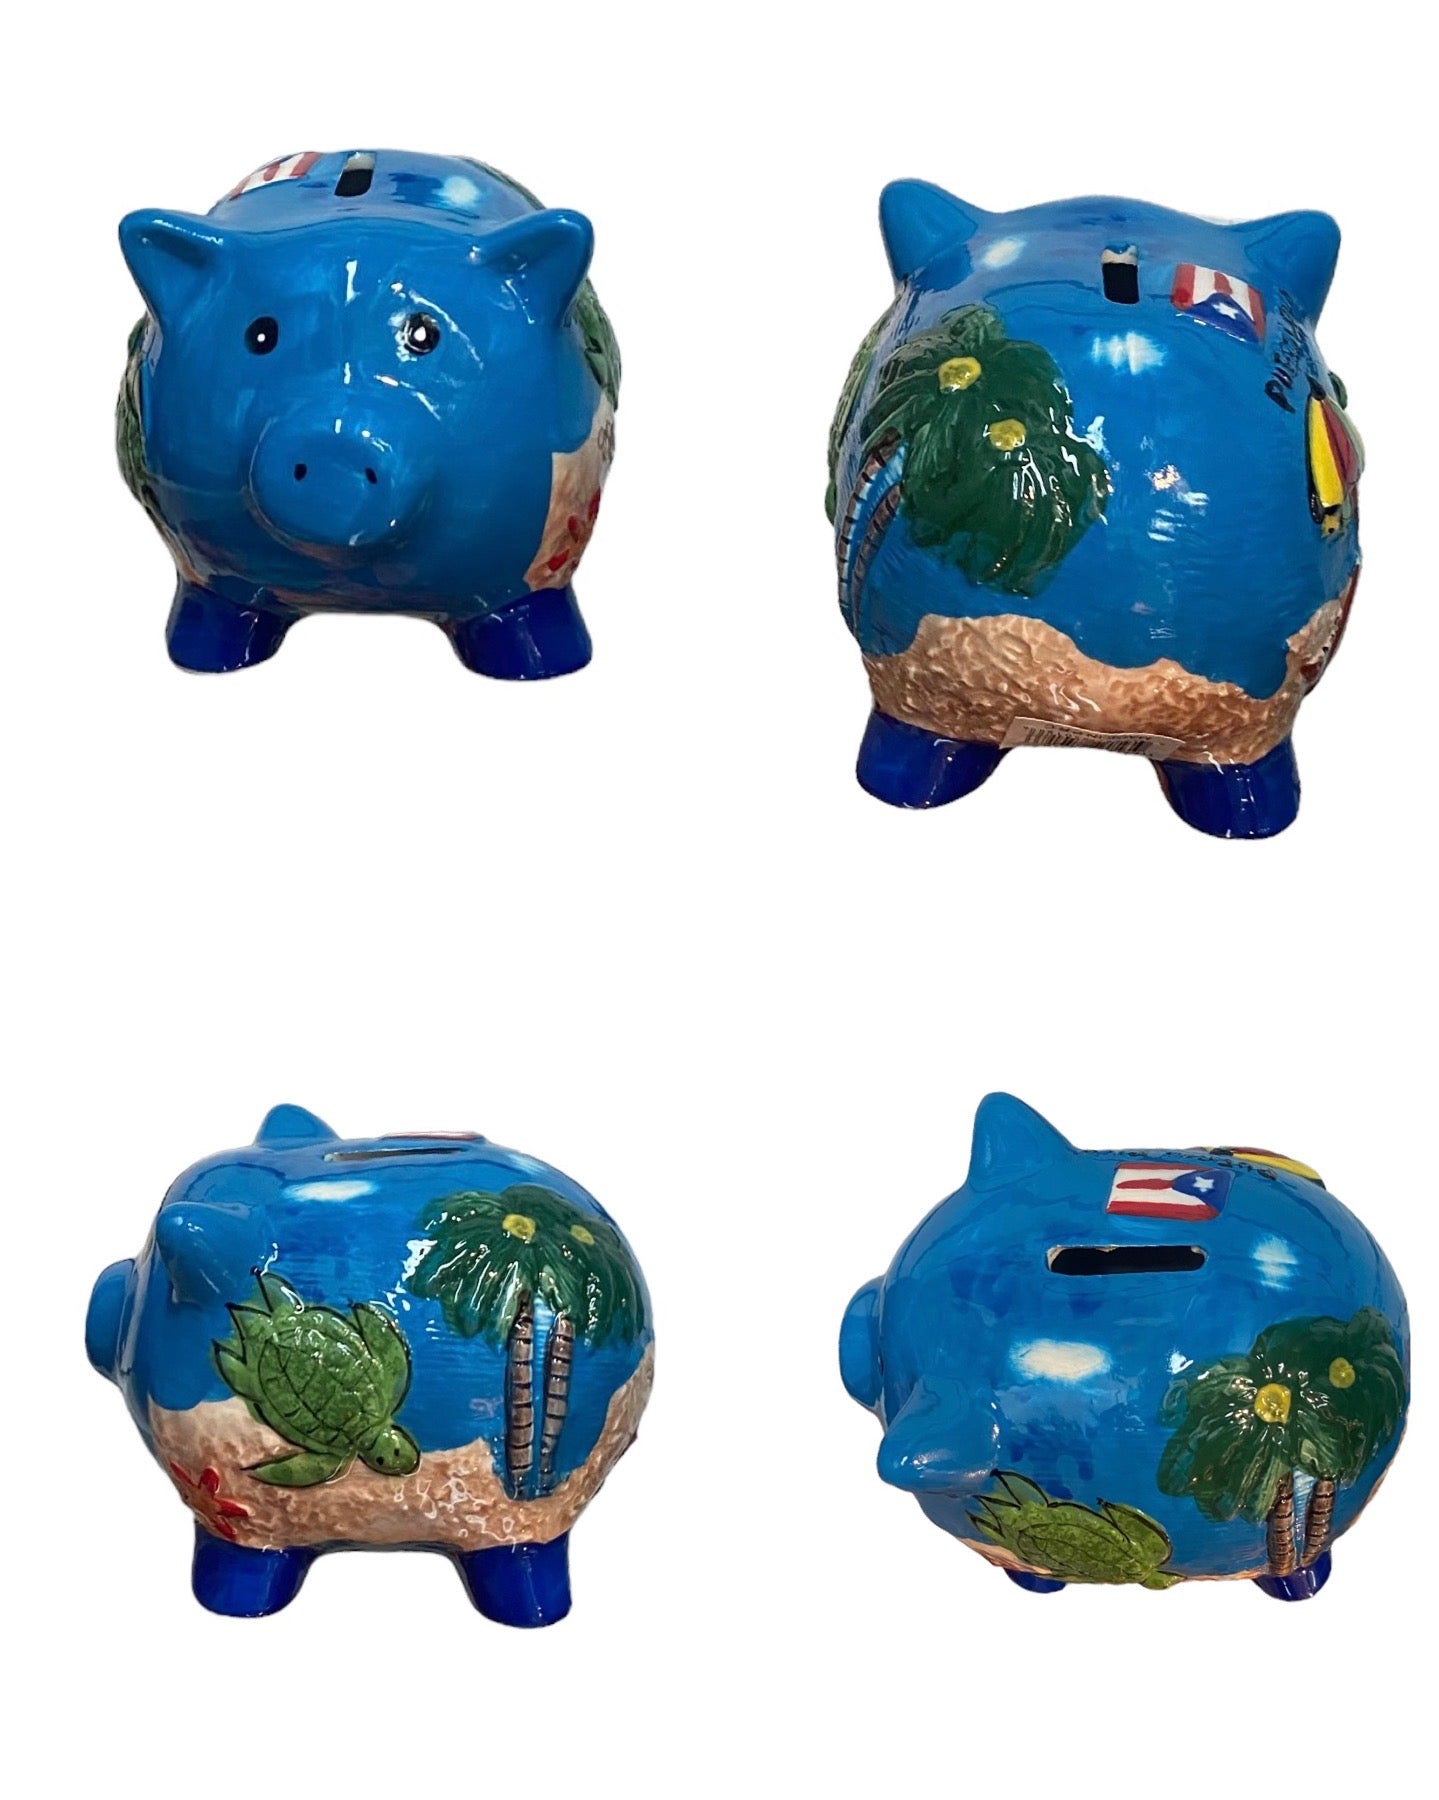 Ceramic piggy bank